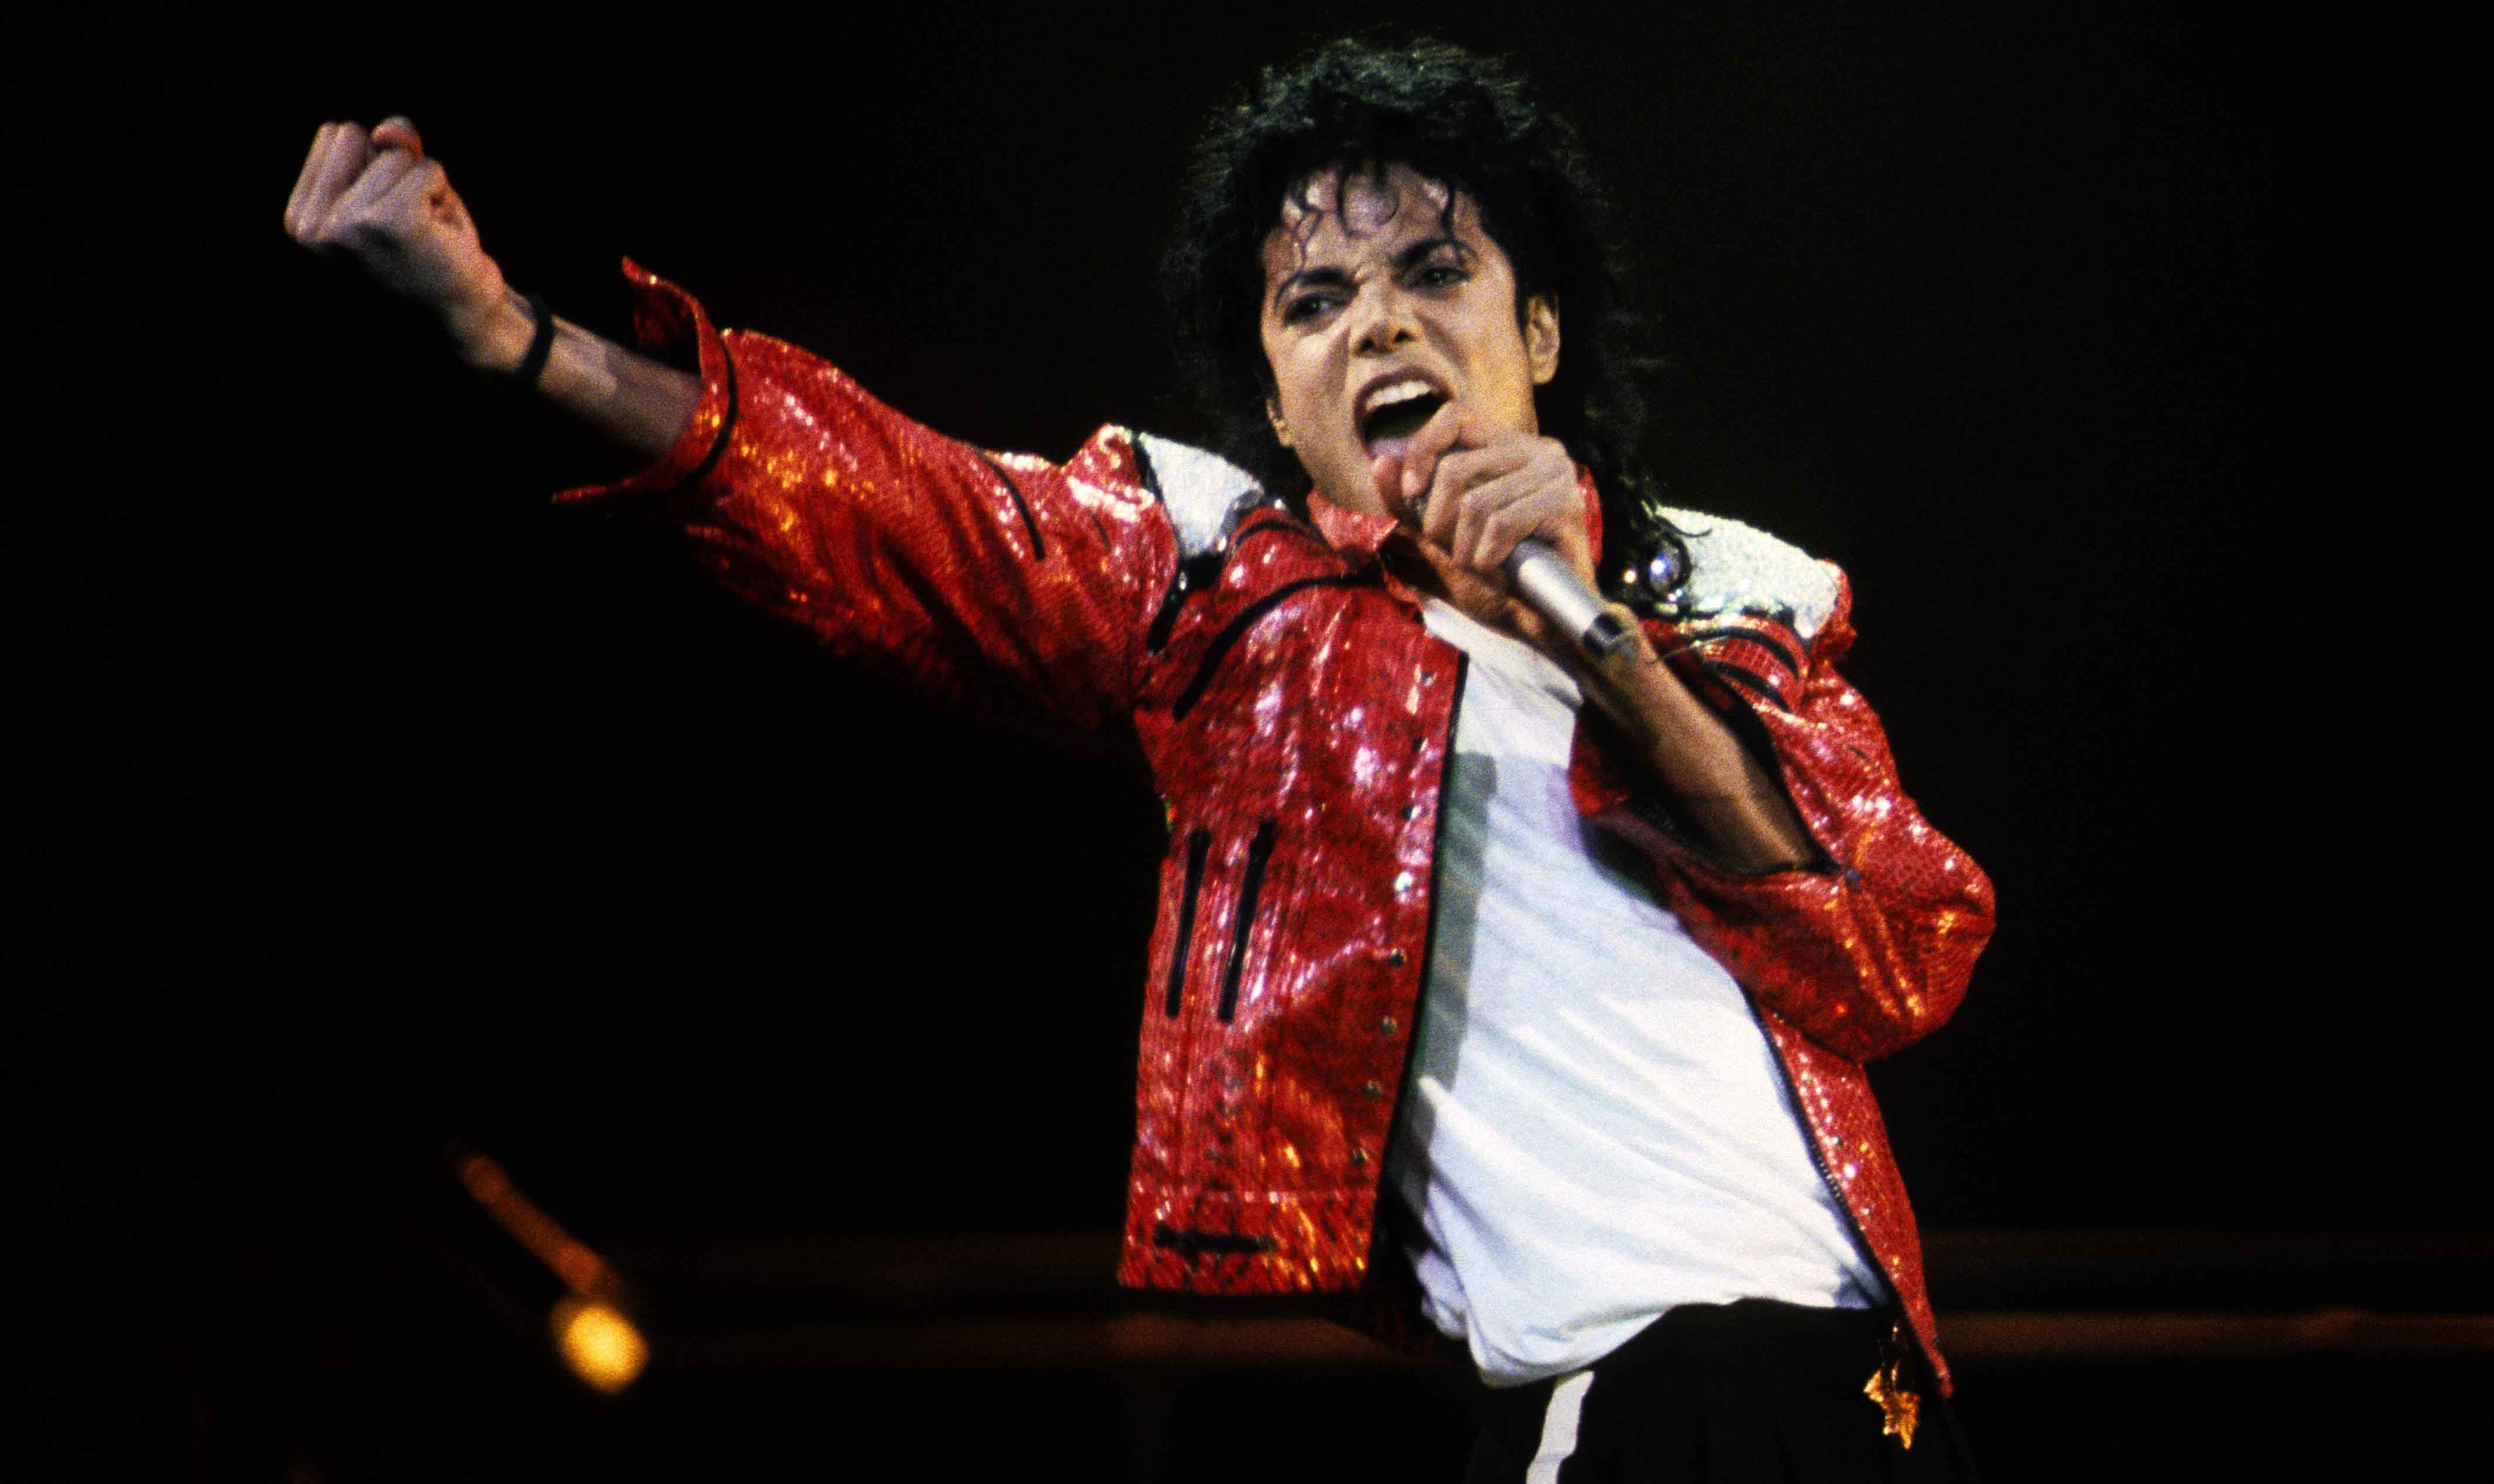 El Sumario - La Asociación de la Industria de la Grabación de EE.UU. reveló que "Thriller" es el segundo álbum más vendido de todos los tiempos con 33 millones de copias